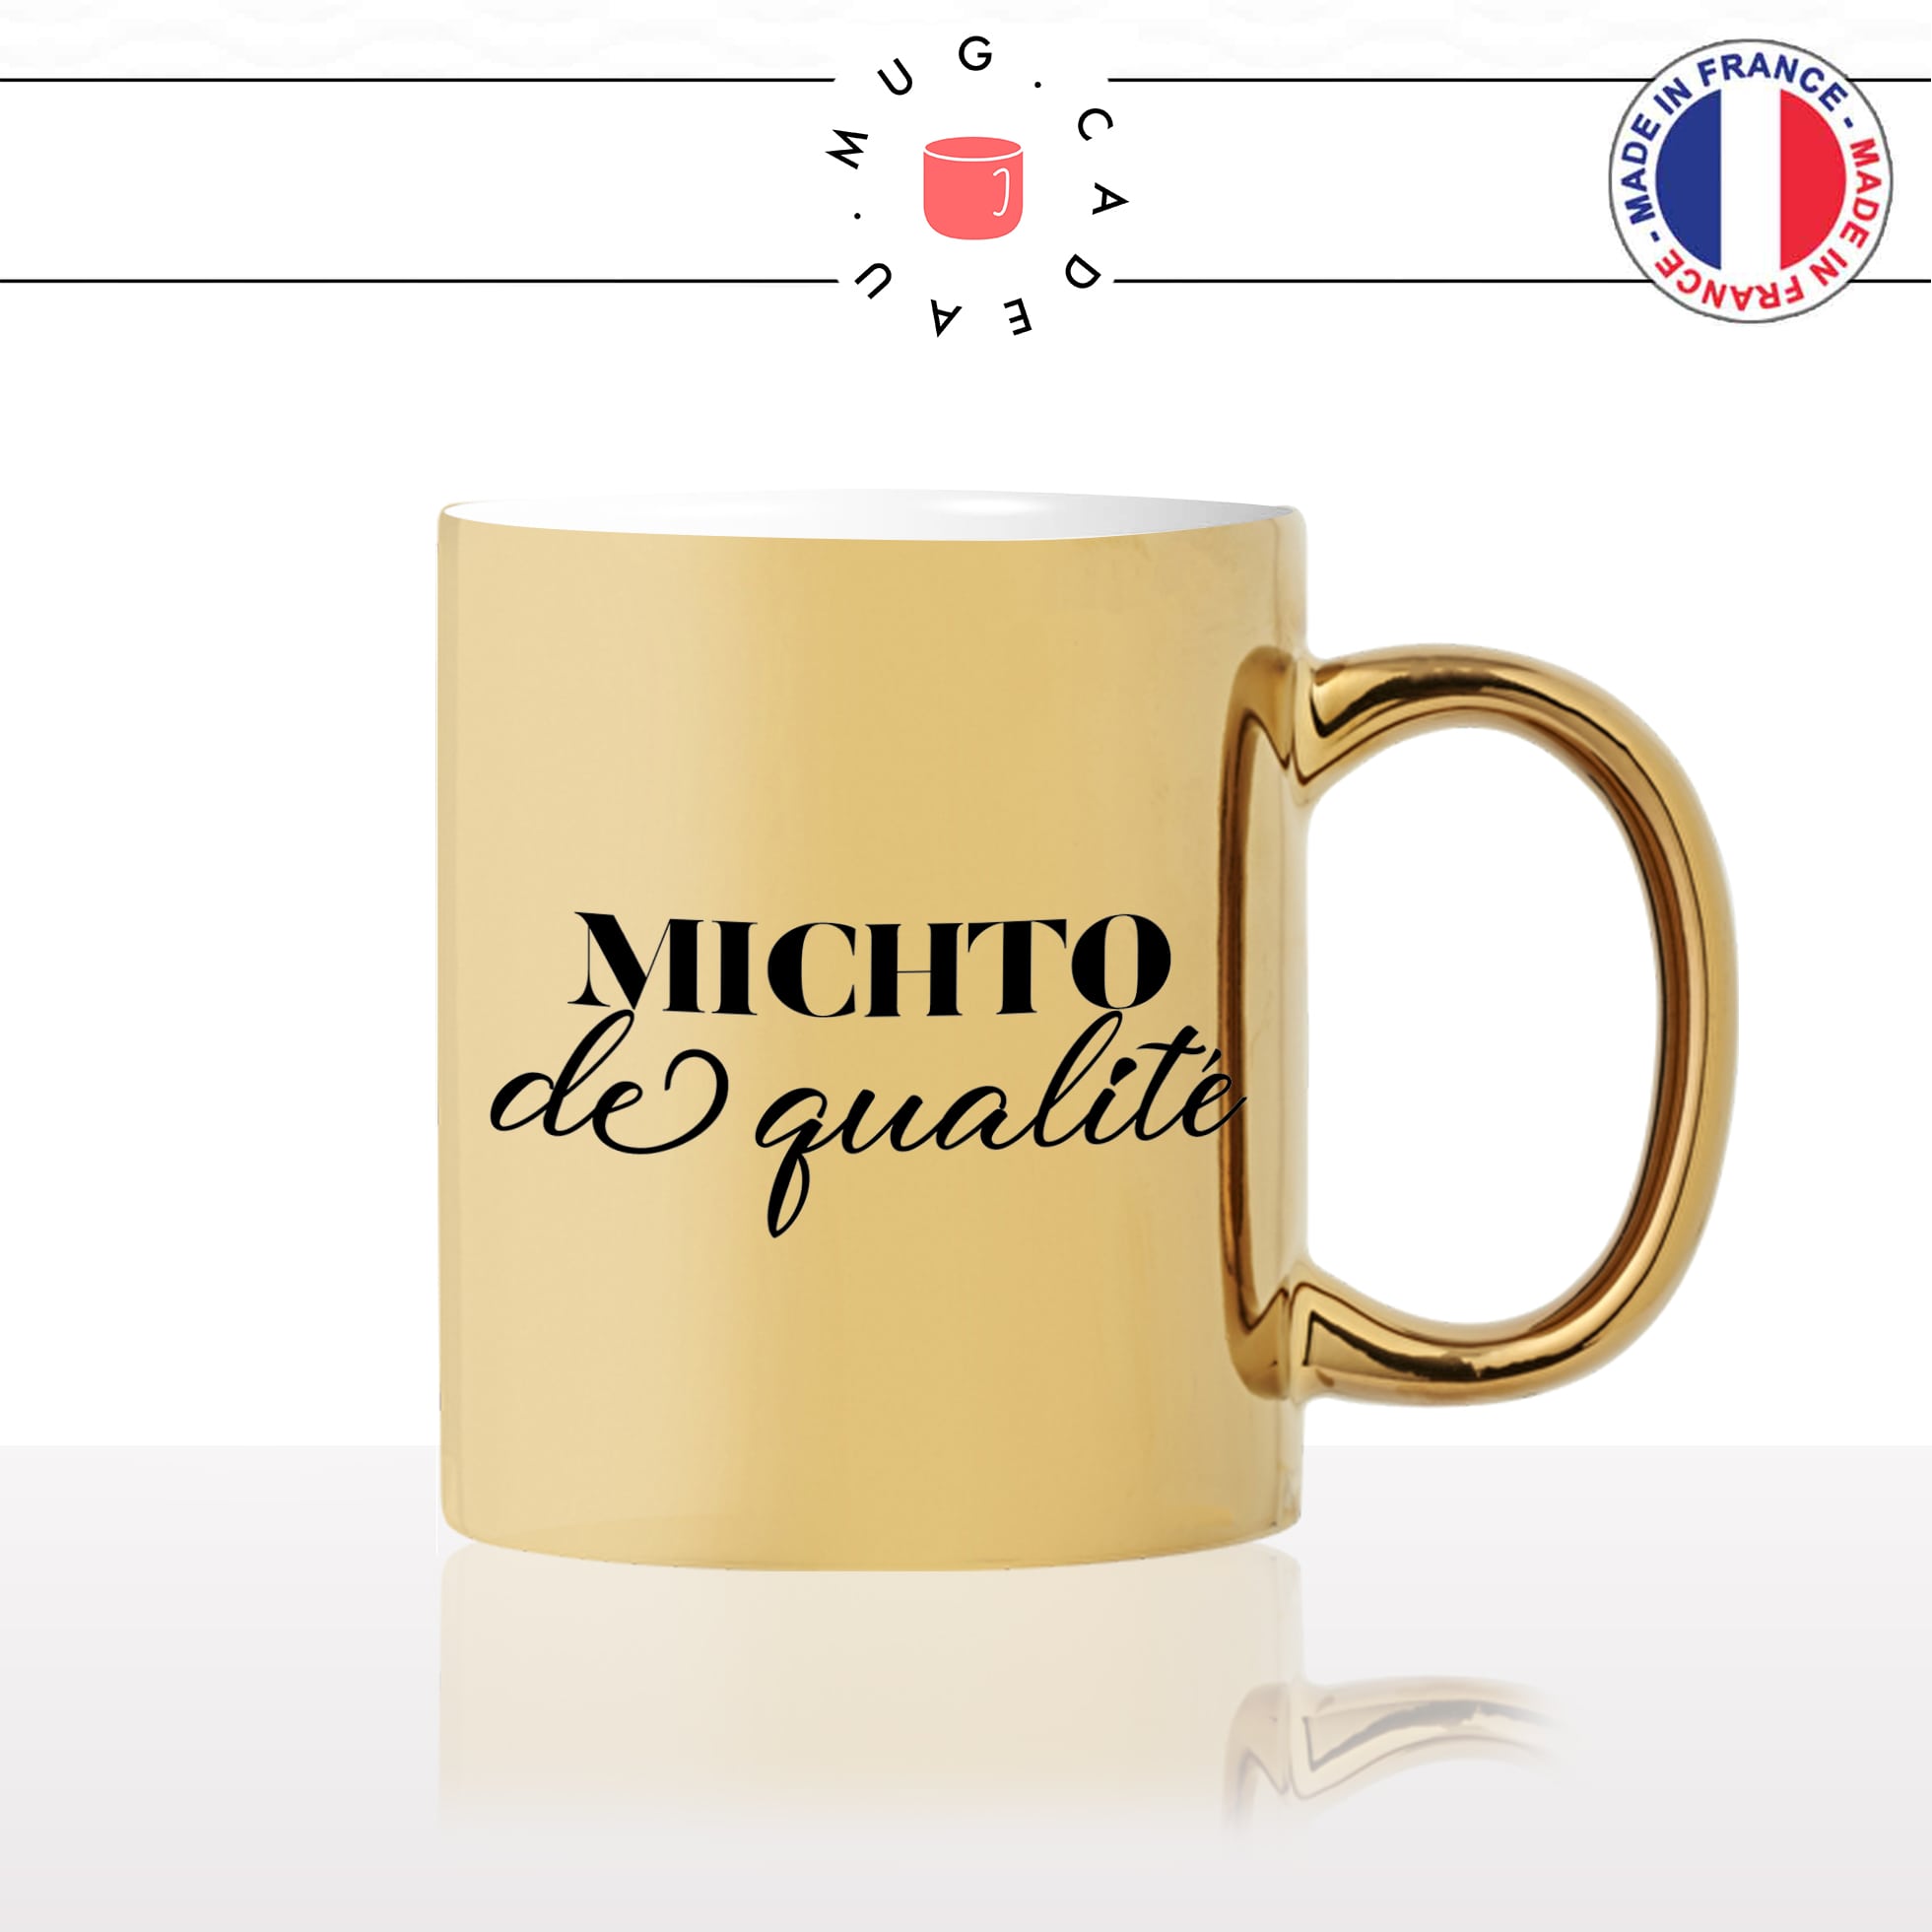 mug-tasse-doré-or-gold-michto-de-qualité-femme-homme-couple-copine-cool-humour-fun-idée-cadeau-personnalisé-café-thé2-min